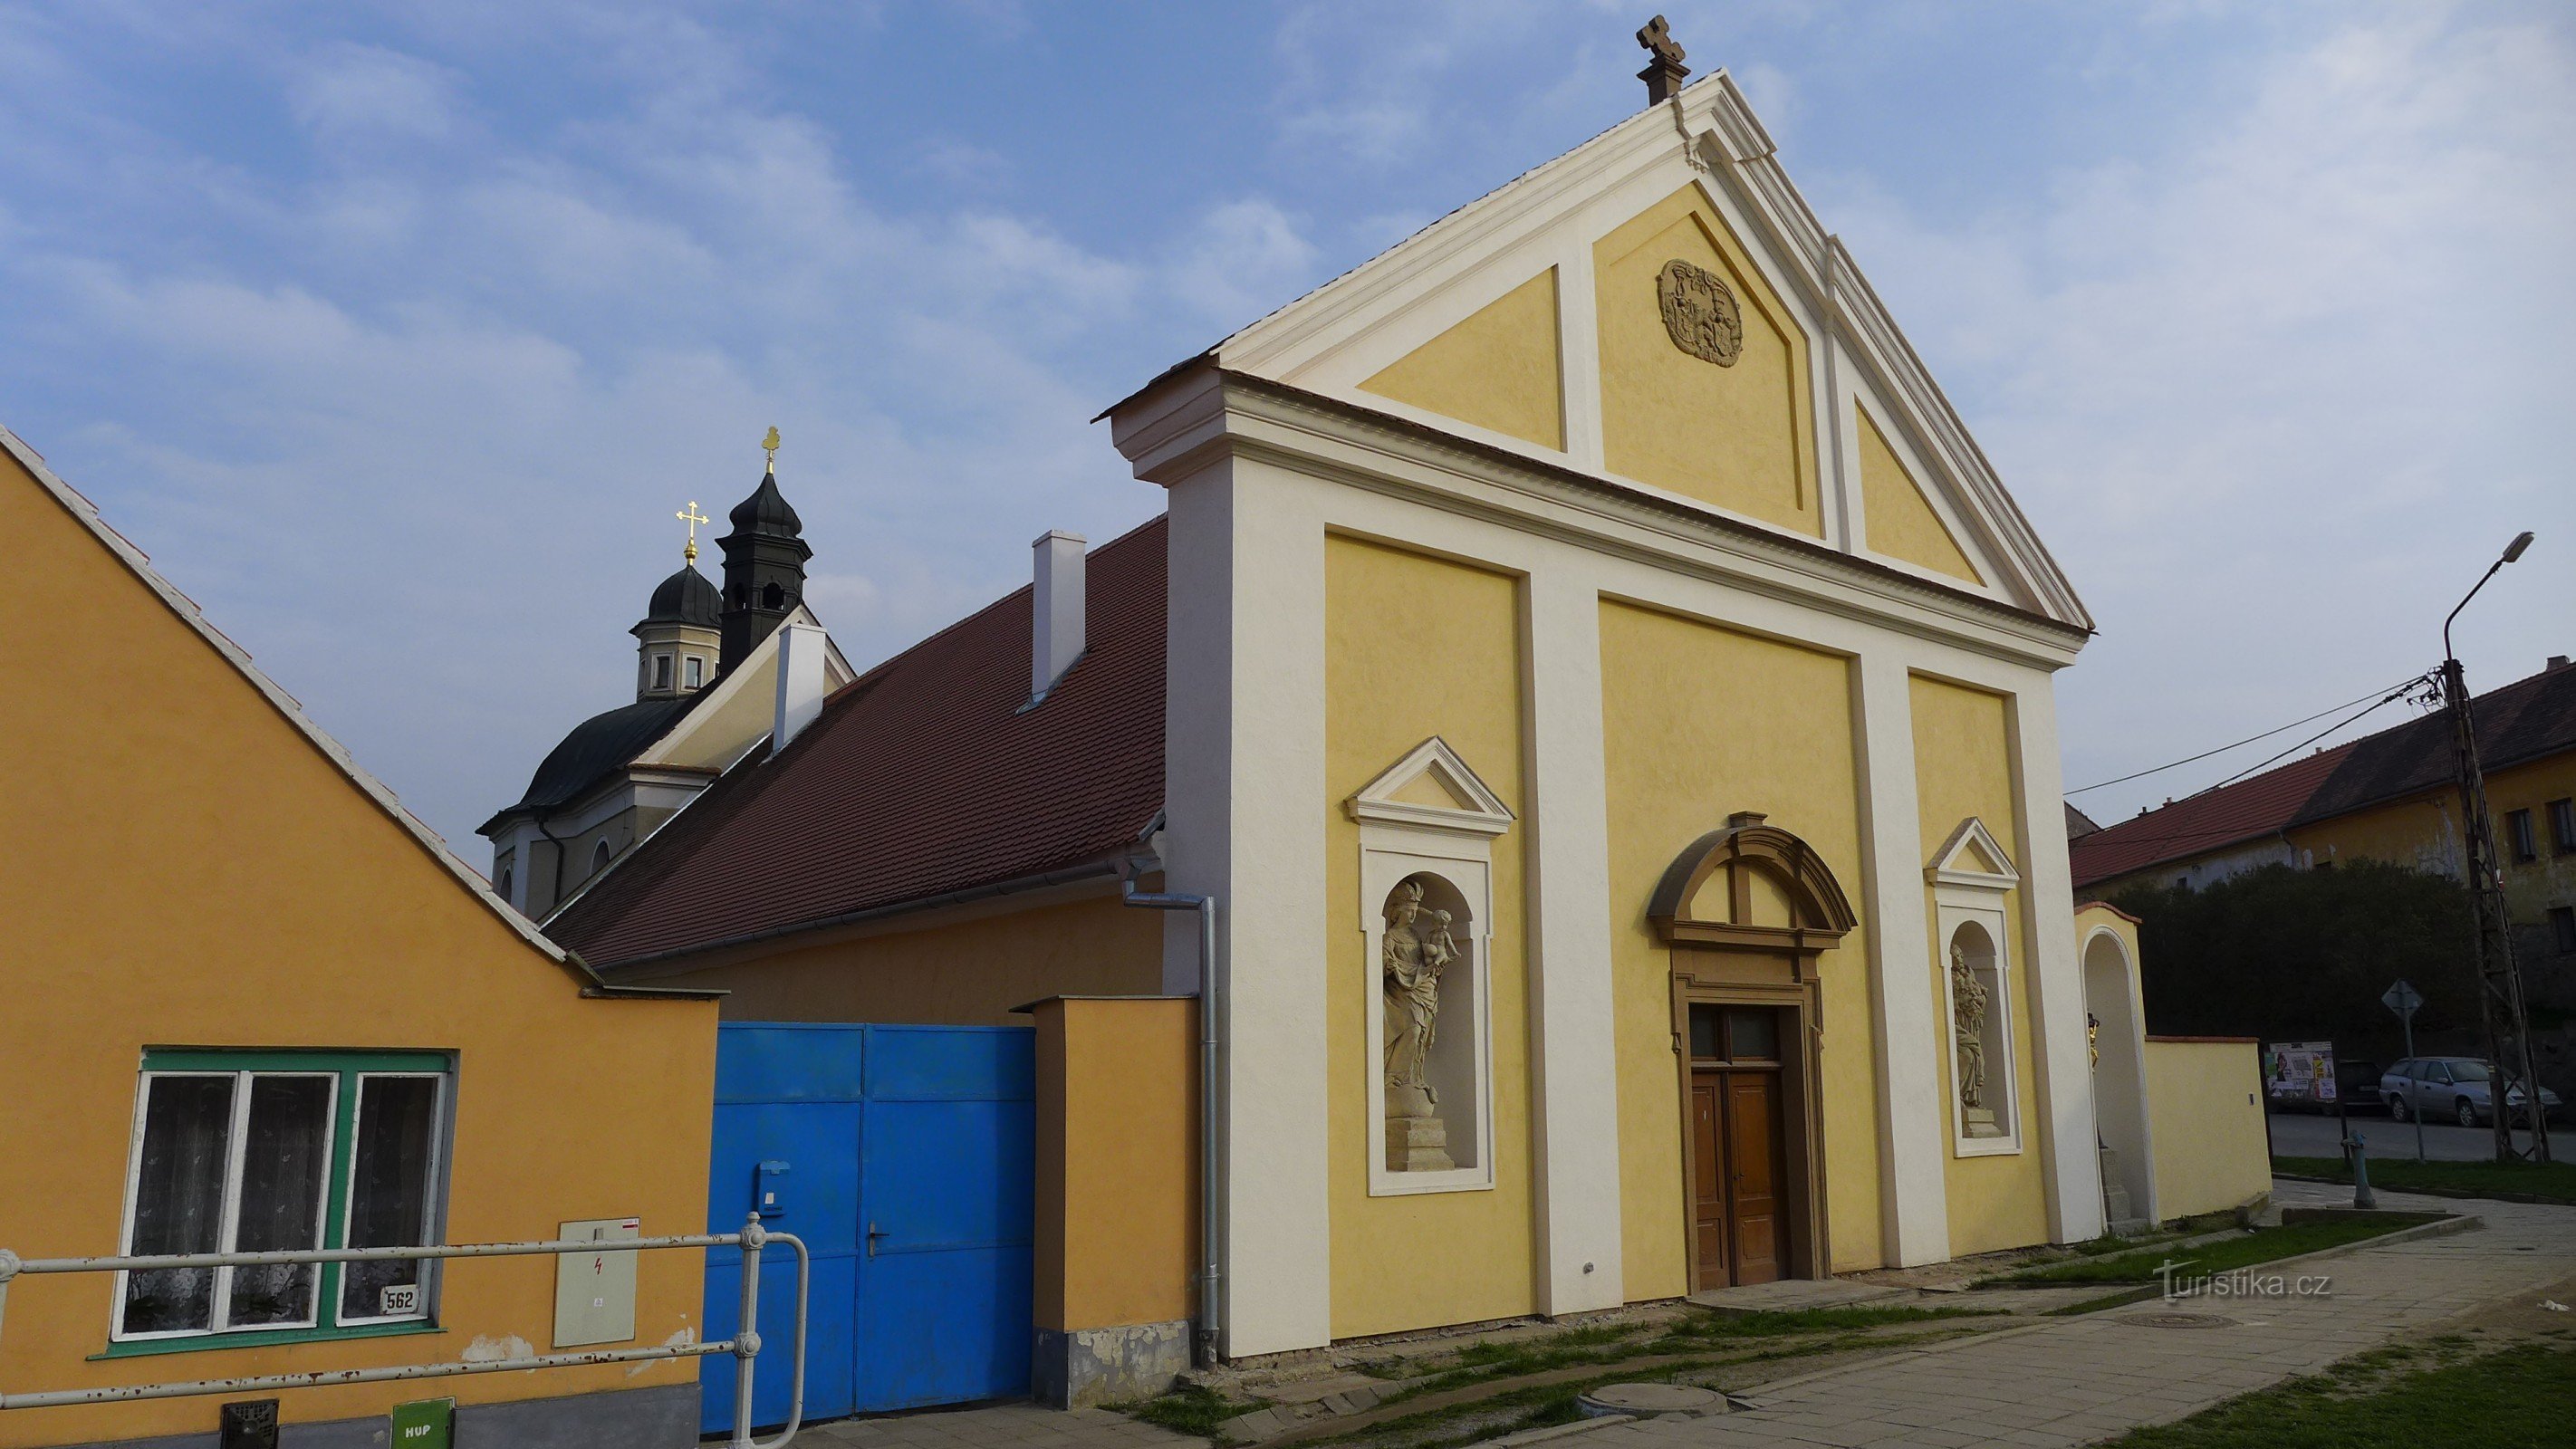 Jaroměřice nad Rokytnou - Szent Katalin kórház és kápolna